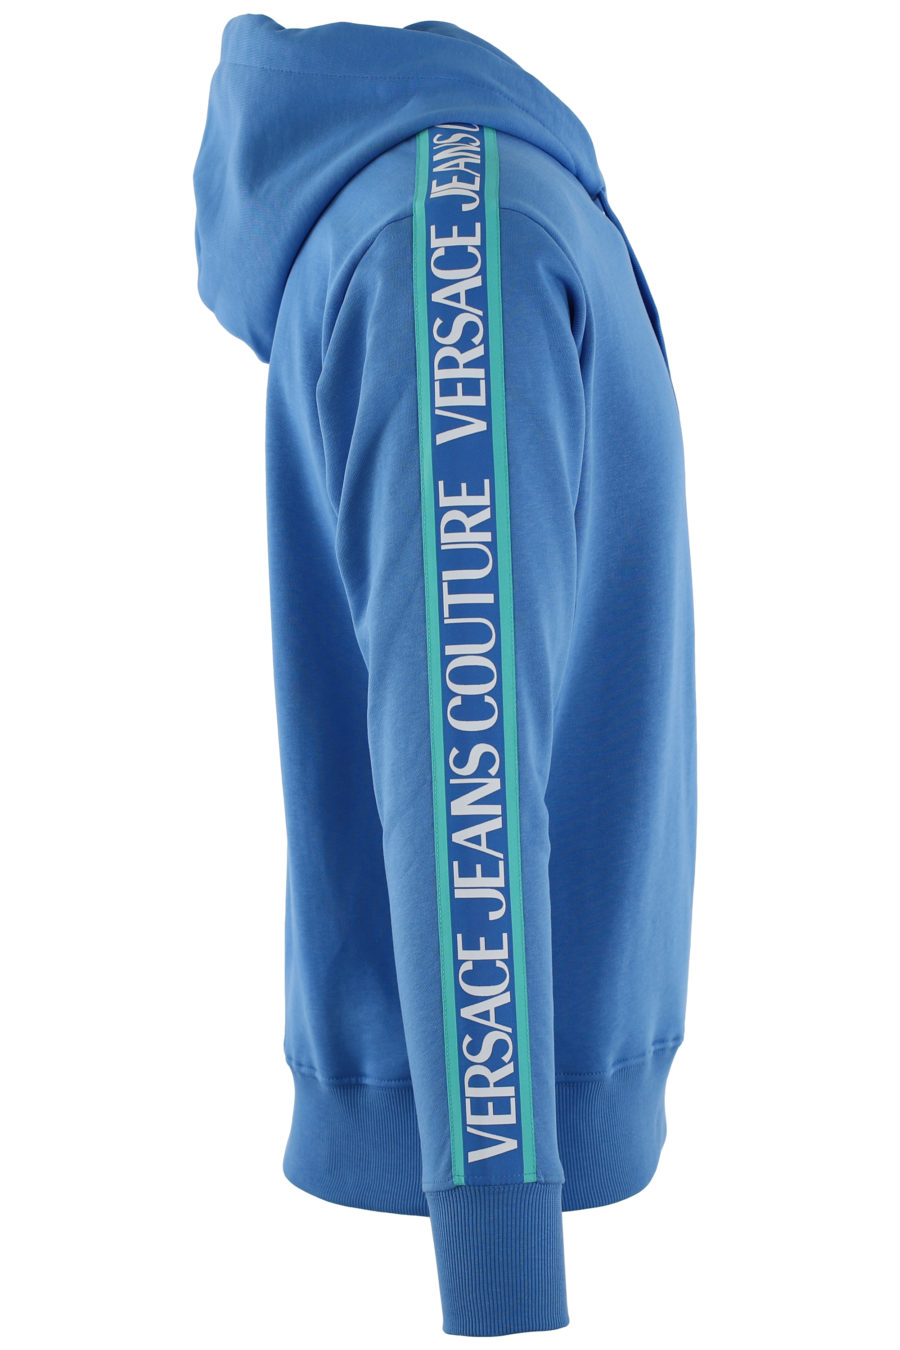 Sudadera azul con capucha y cinta azul con logotipo - IMG 0456